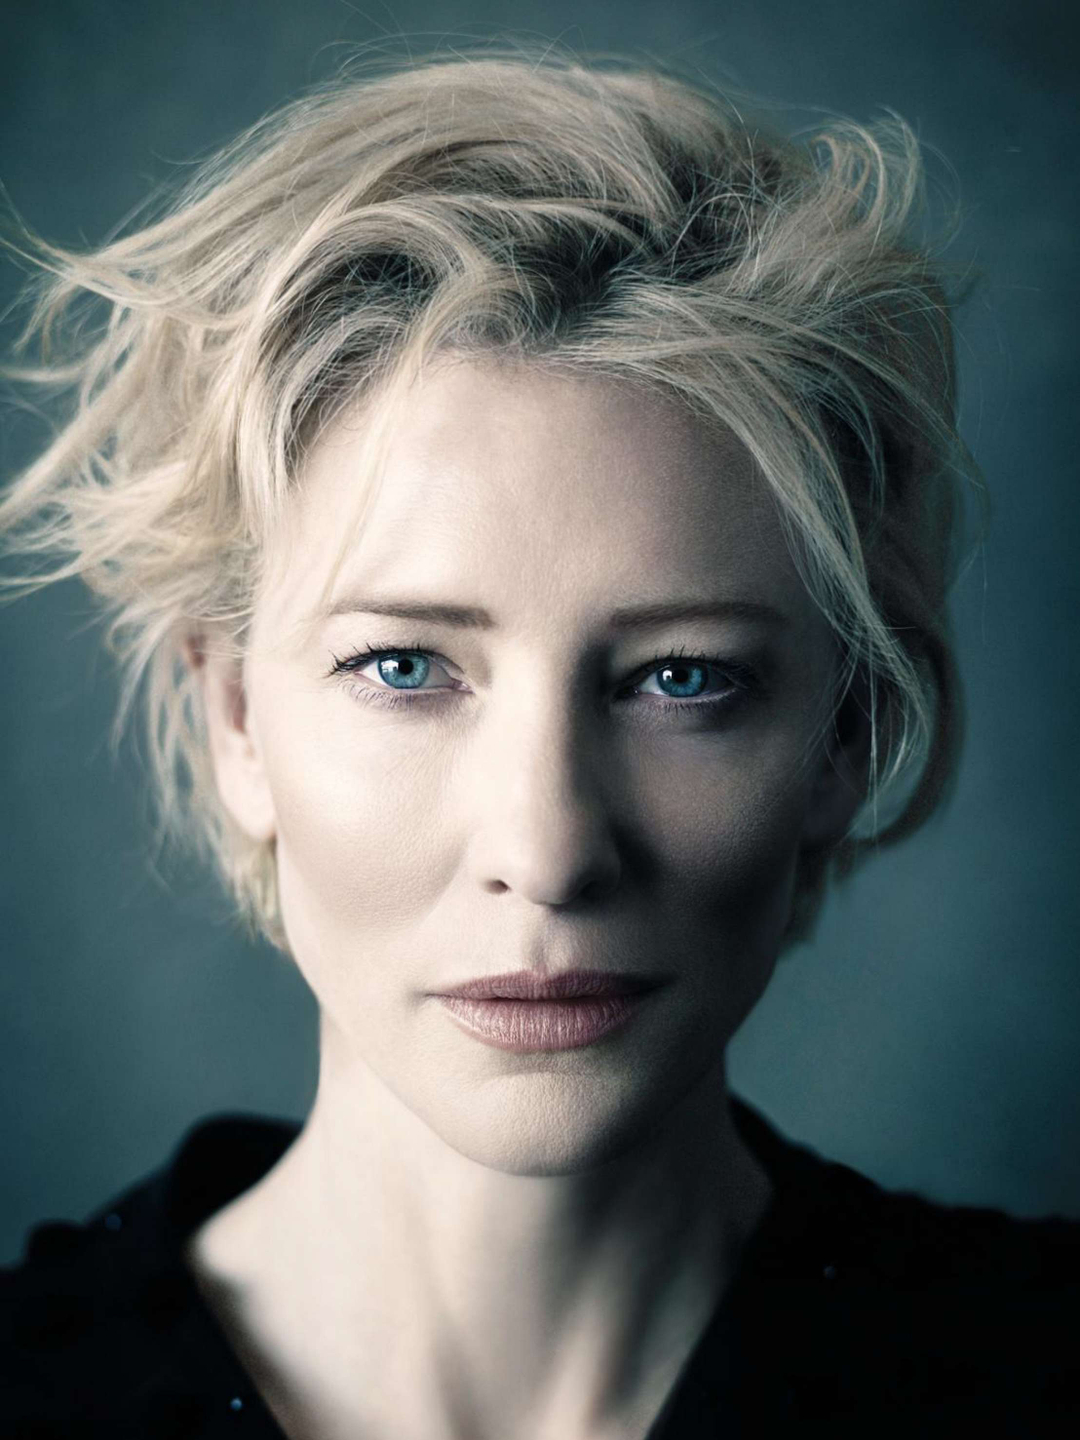 Cate Blanchett dating history